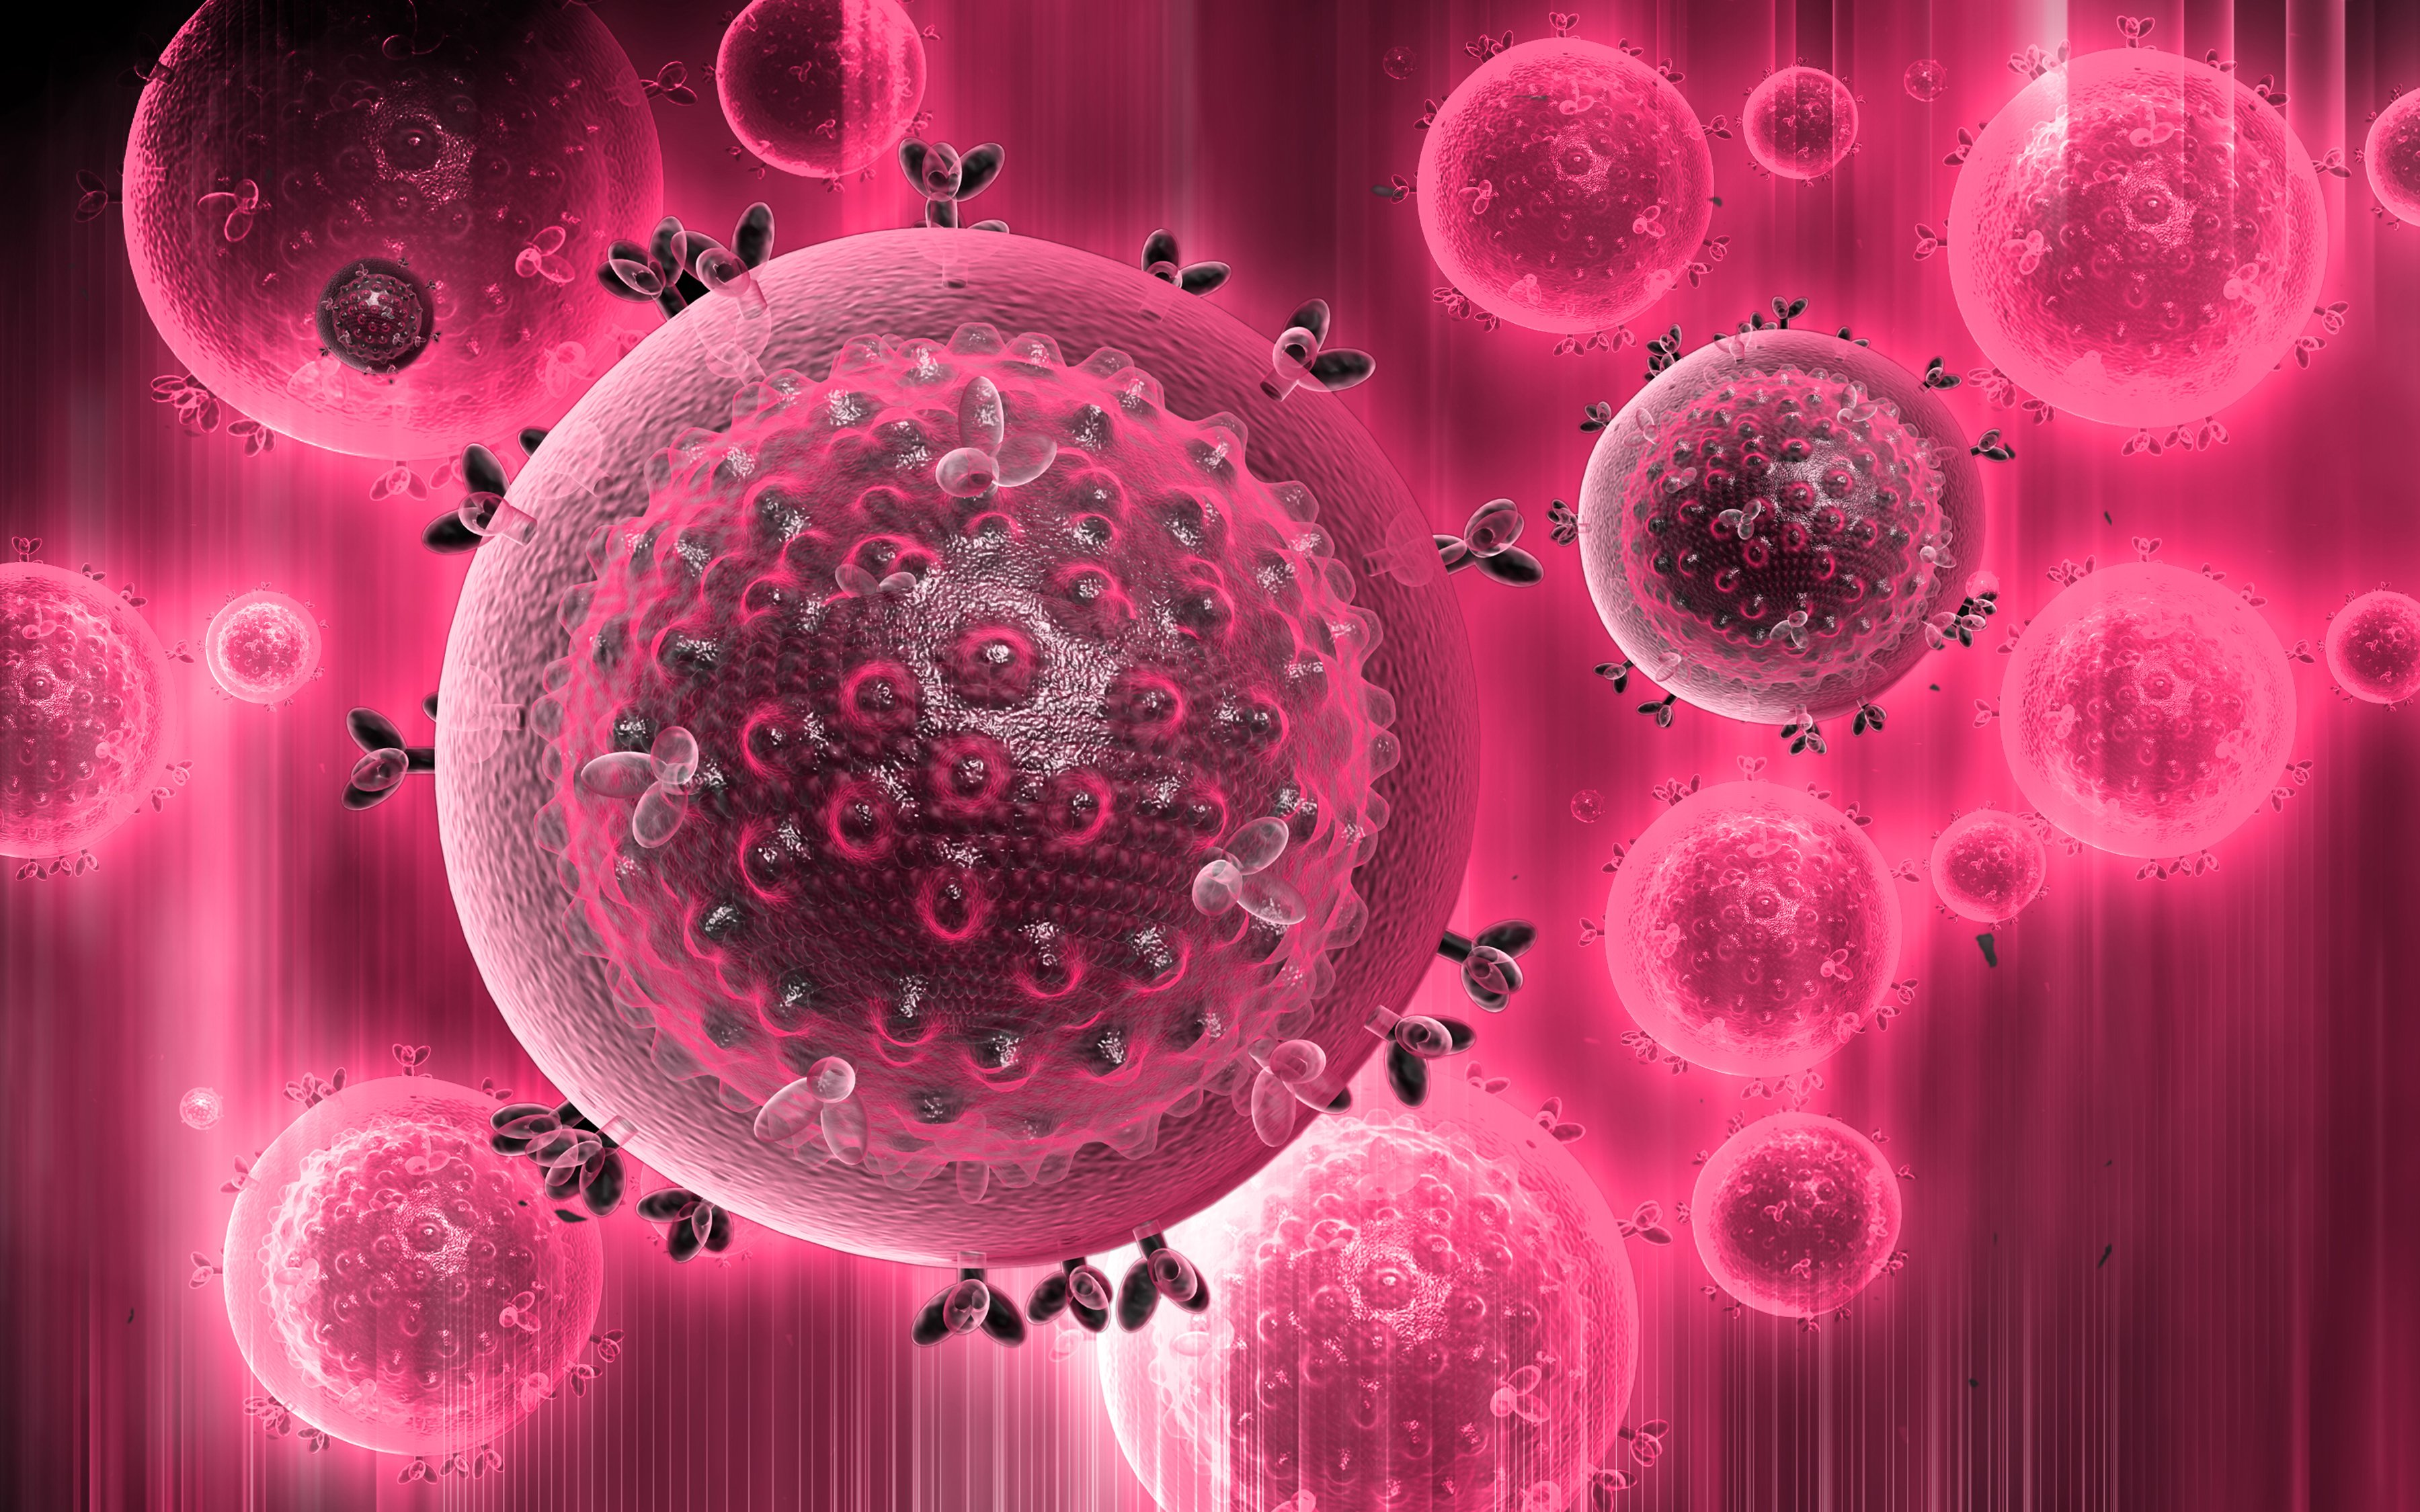 Human immunodeficiency virus. Вирус иммунодефицита человека (Human Immunodeficiency virus). ВИЧ поражает клетки иммунной системы. Стволовая клетка.